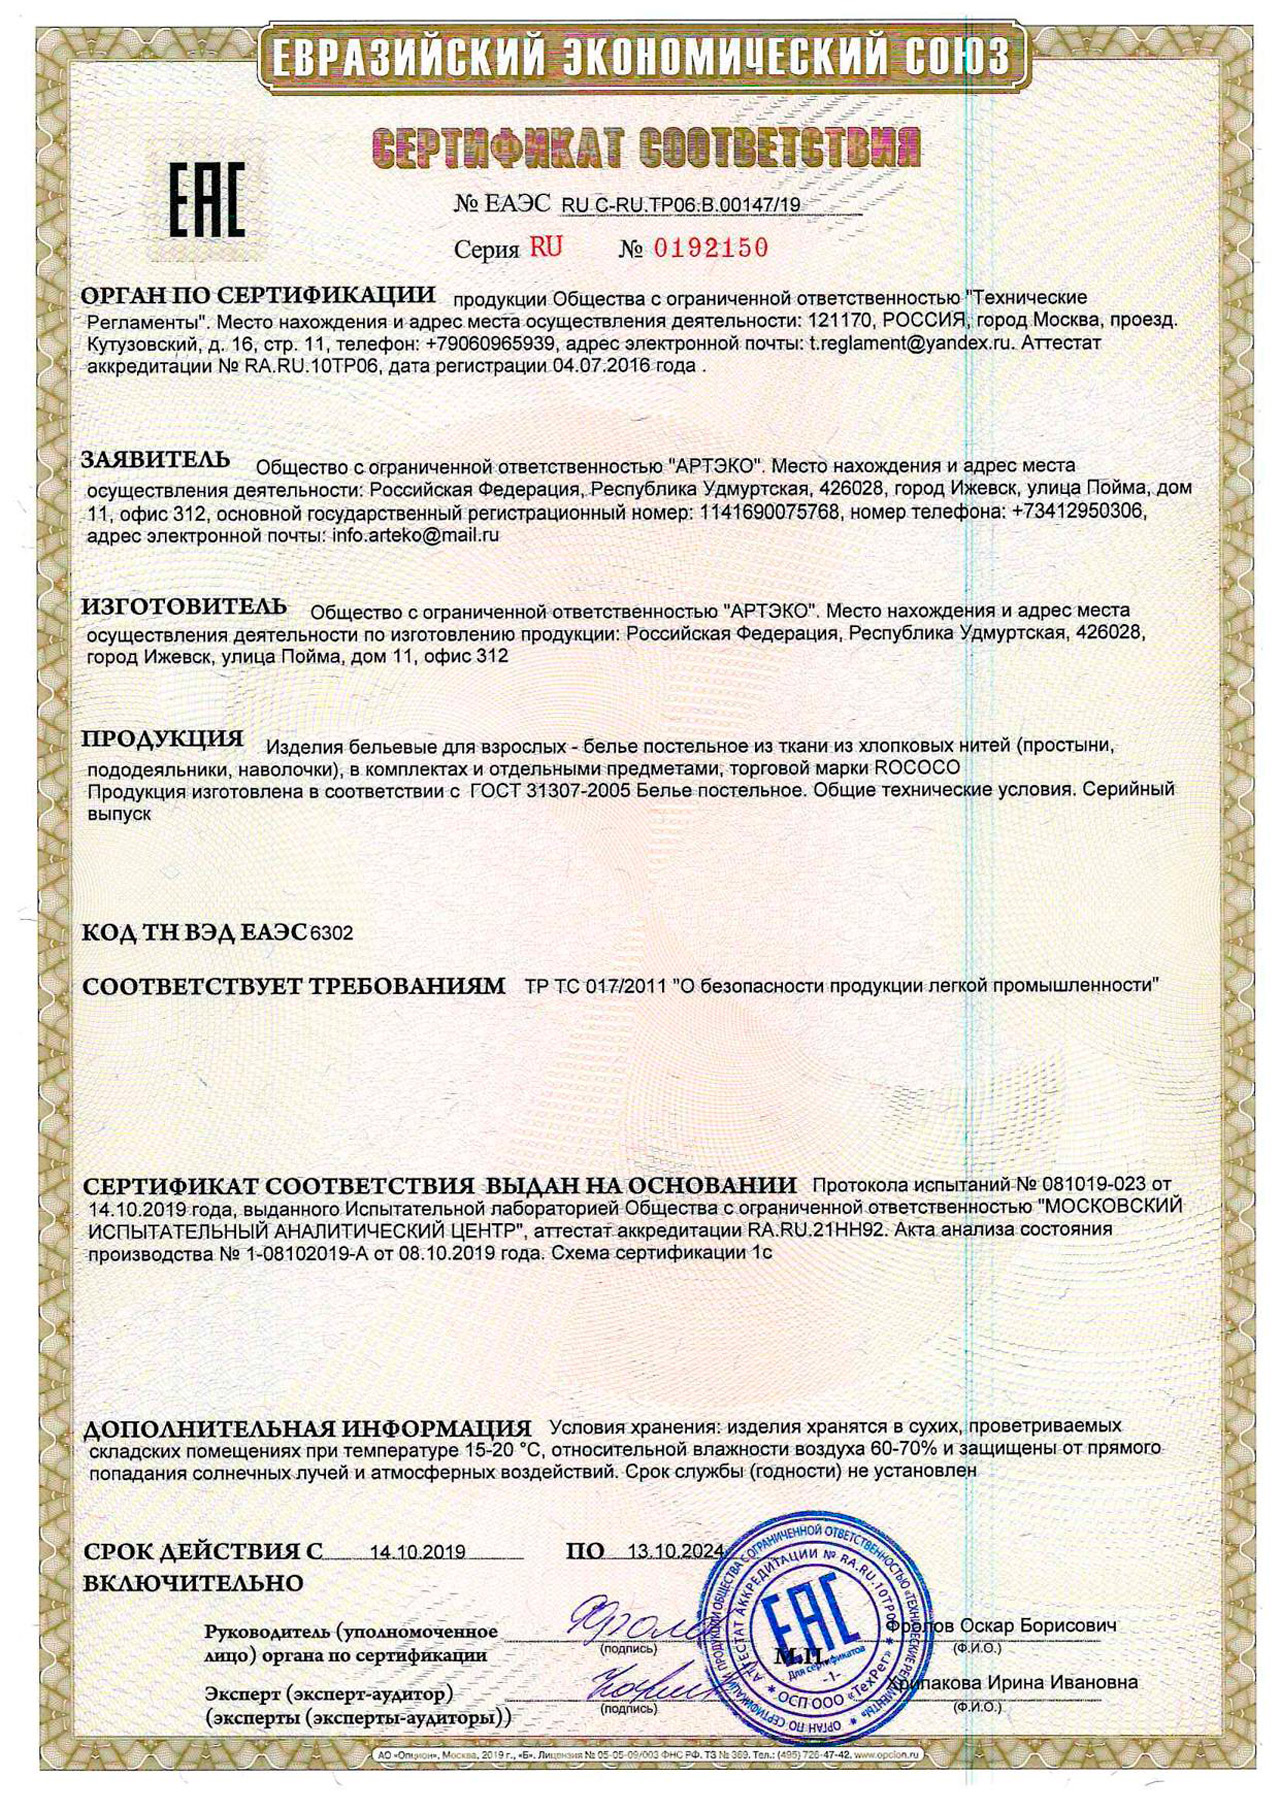 Пример сертификатов